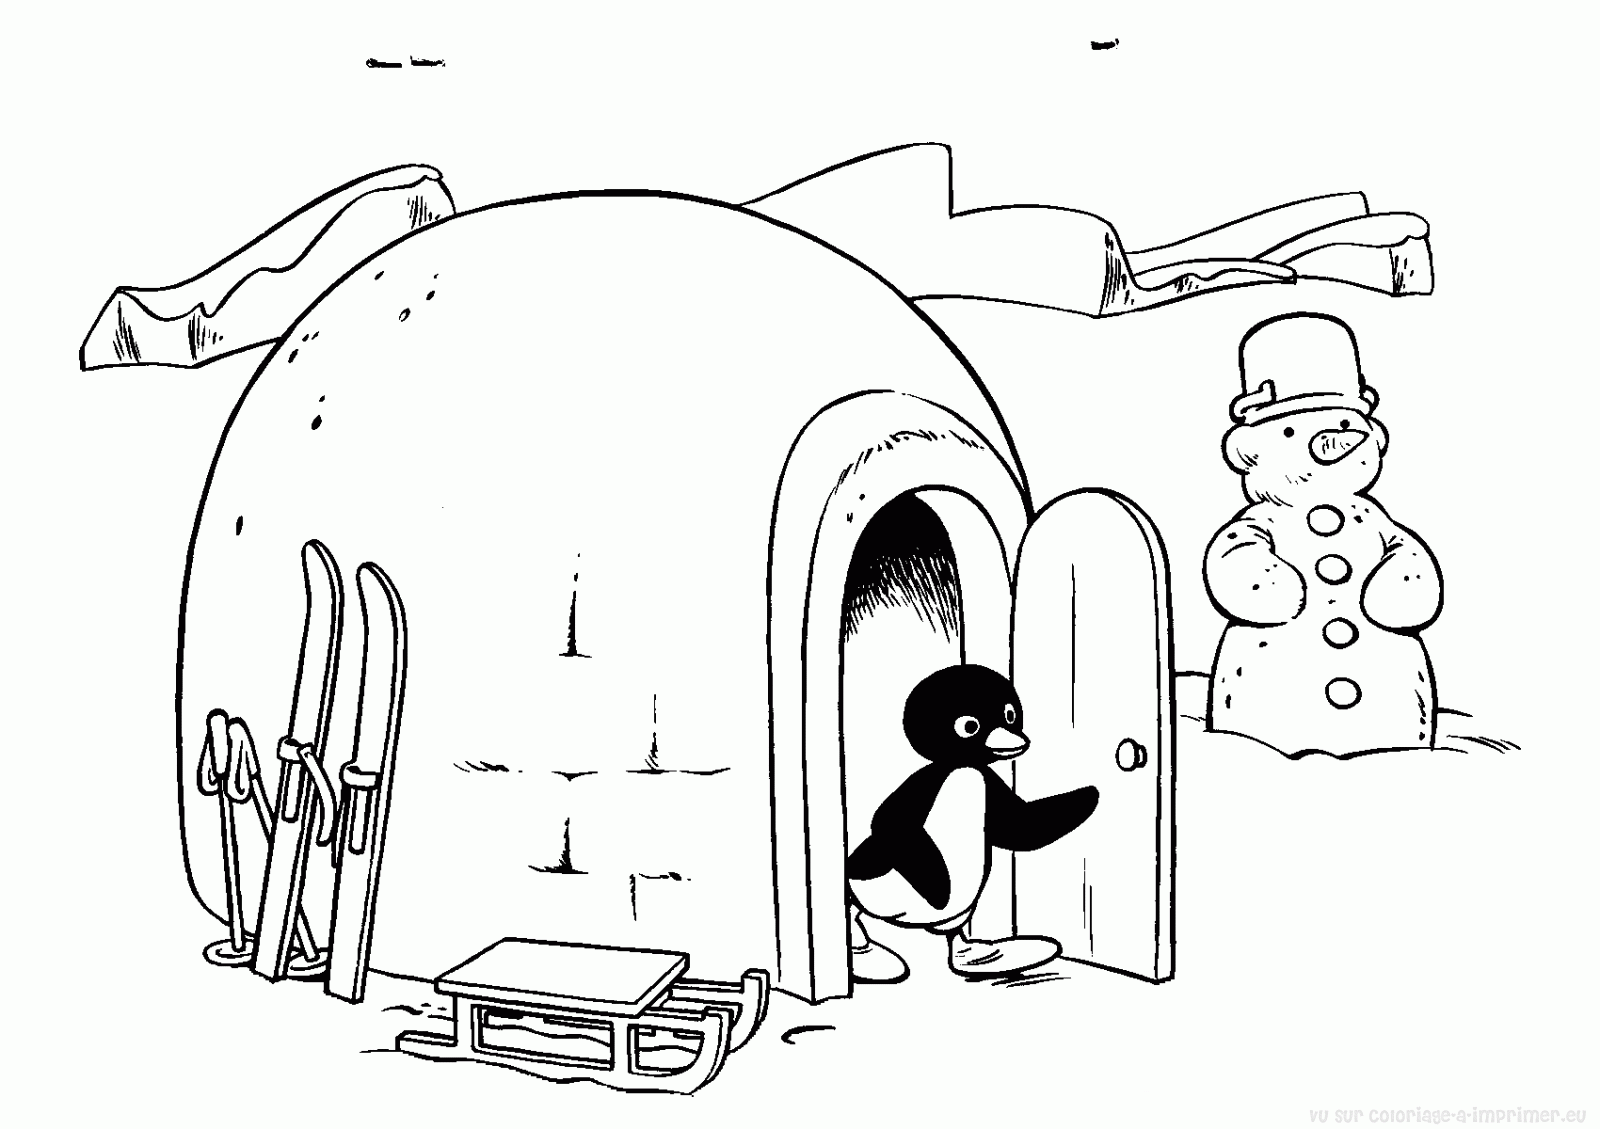 Disegno di Un pinguino accanto a un igloo da colorare